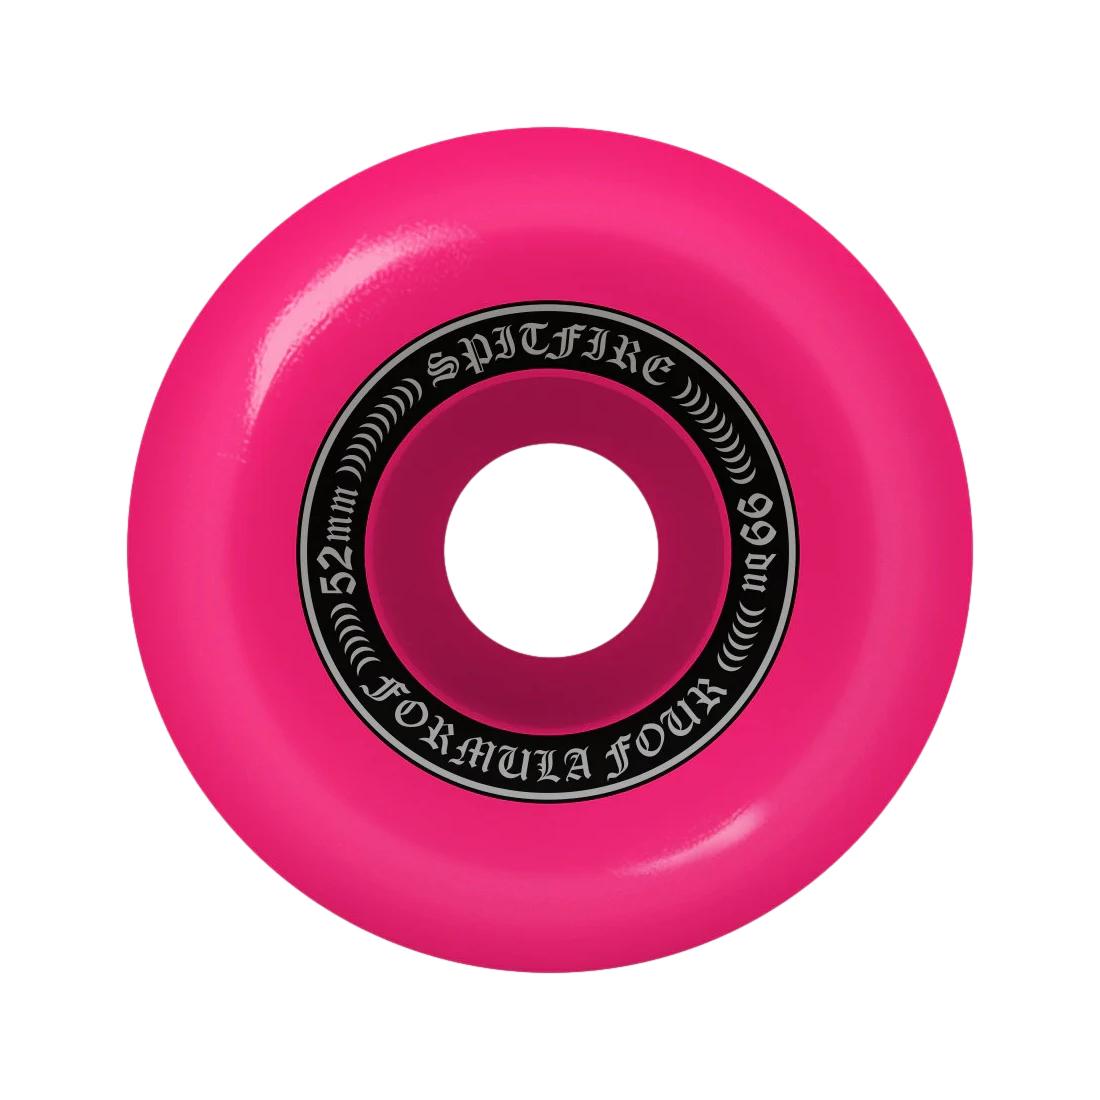 Spitfire F499 OG Classics Pink 52mm - Venue Skateboards